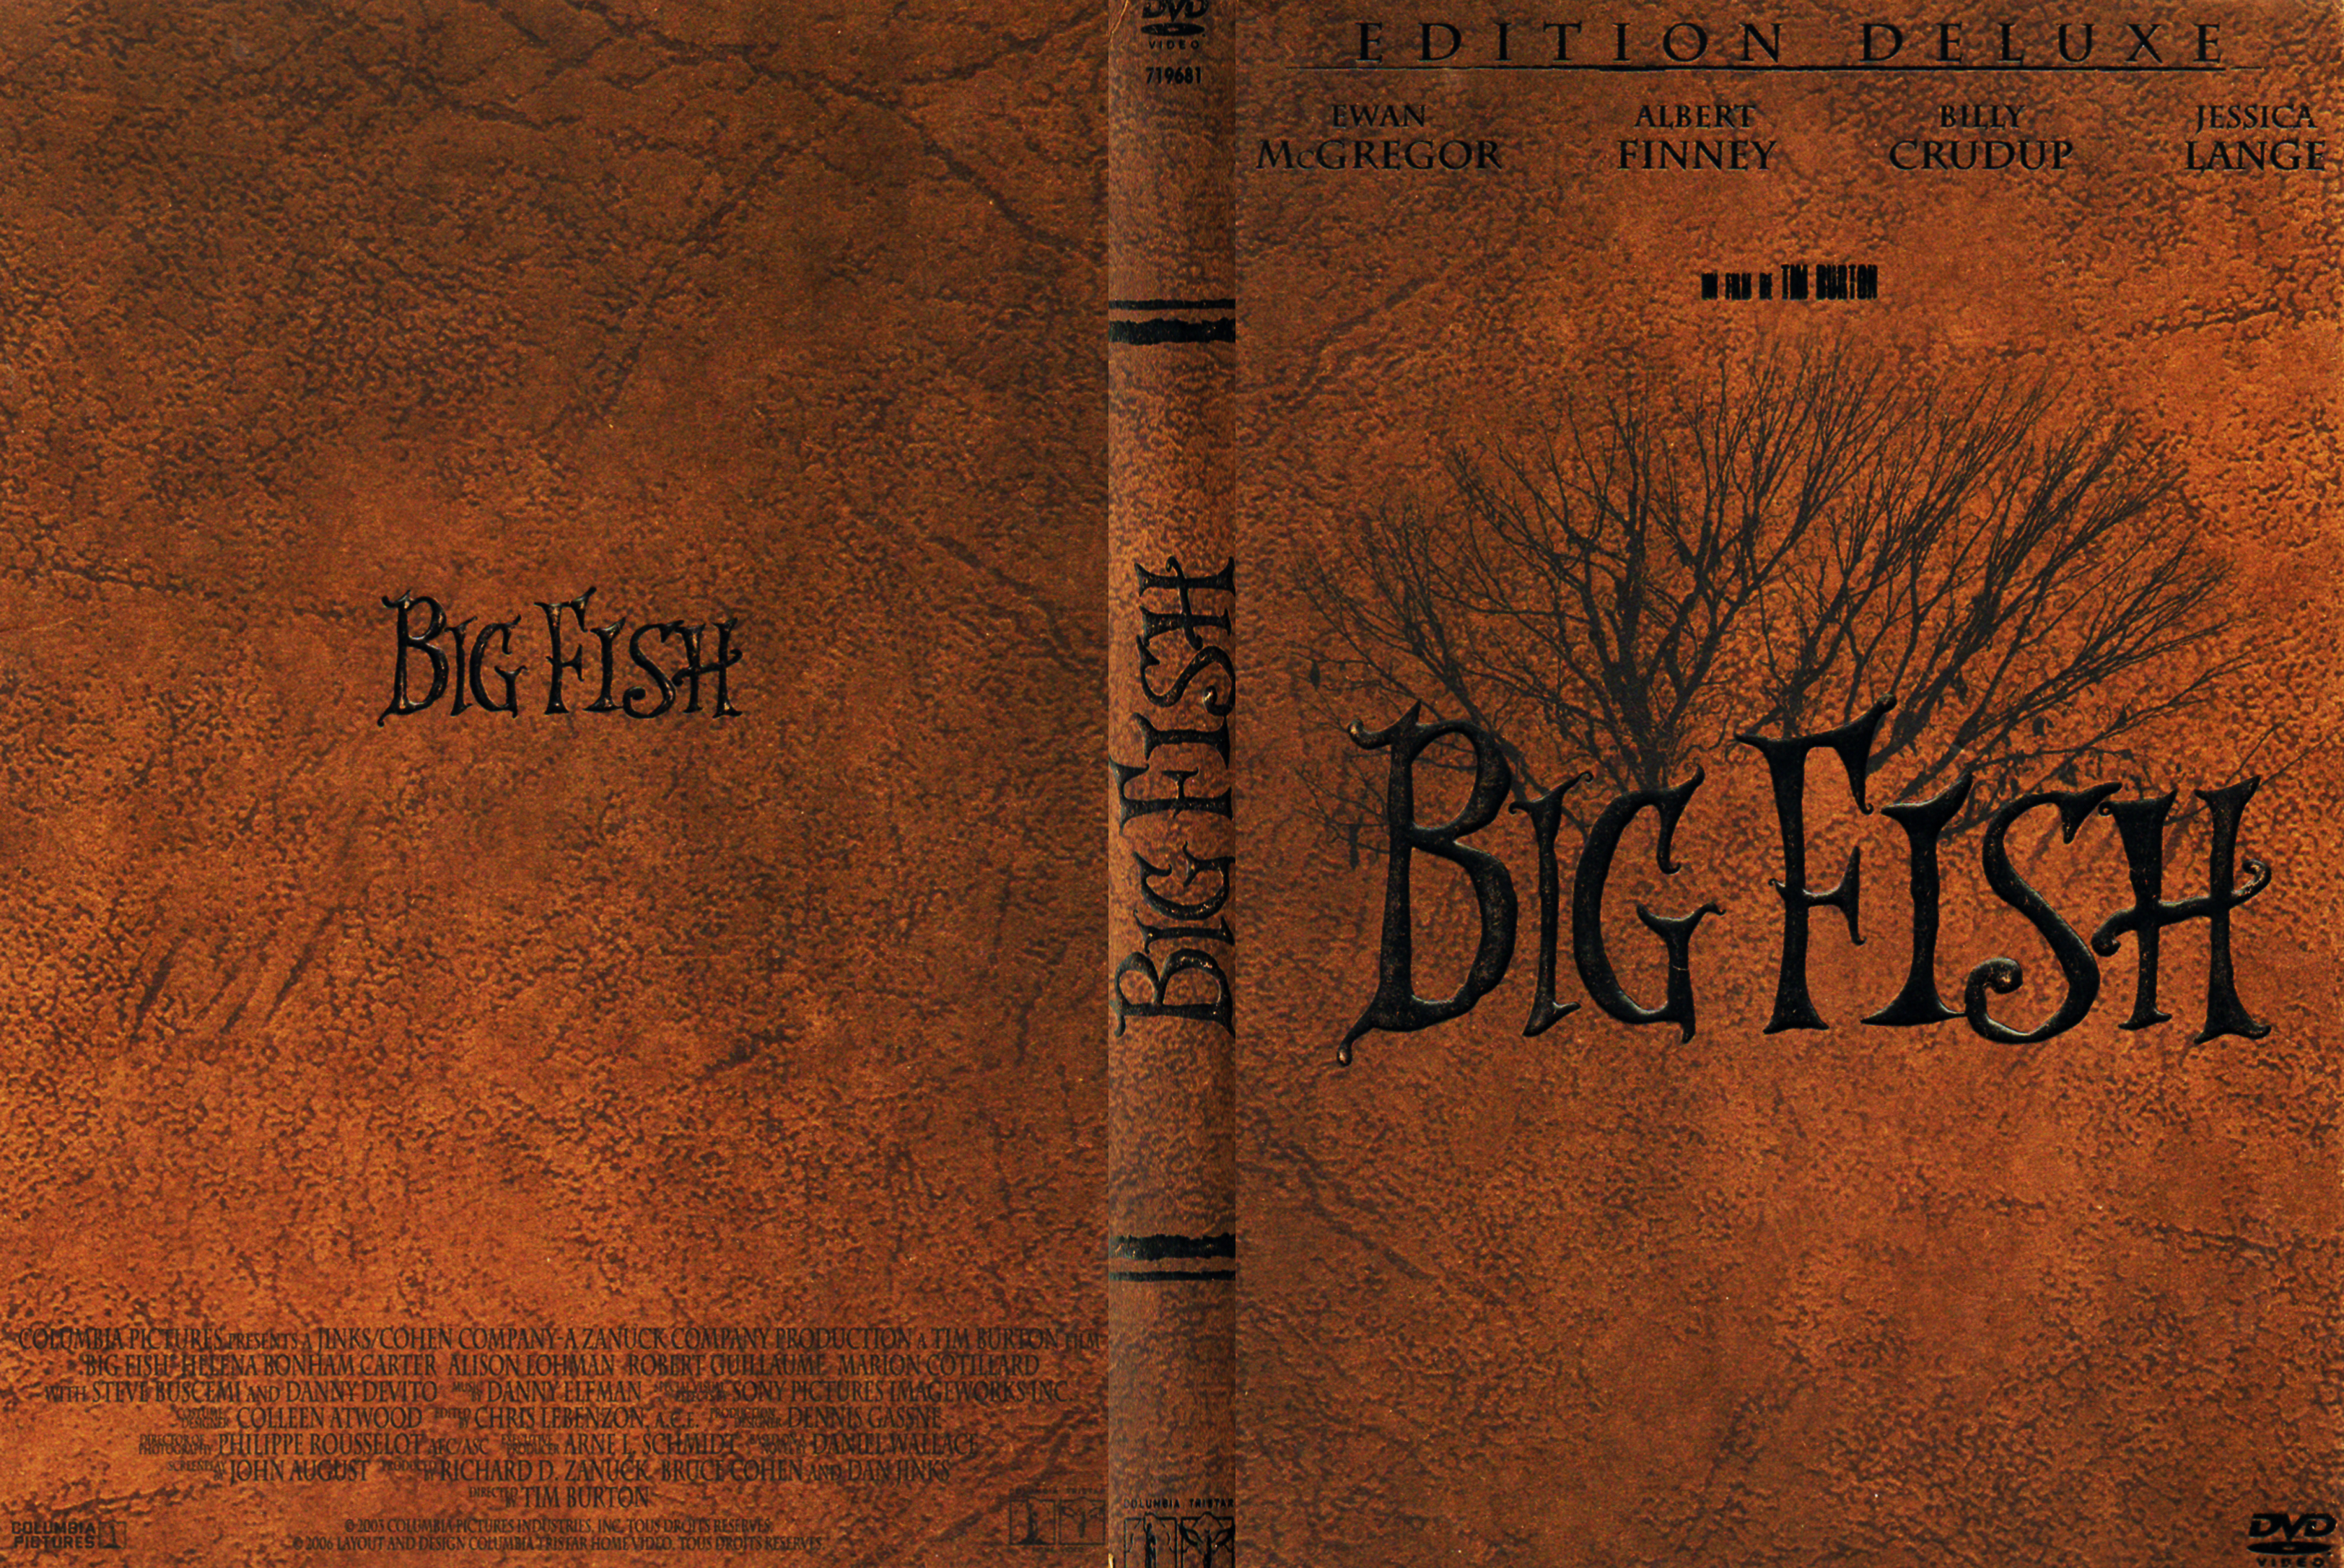 Jaquette DVD Big Fish v3